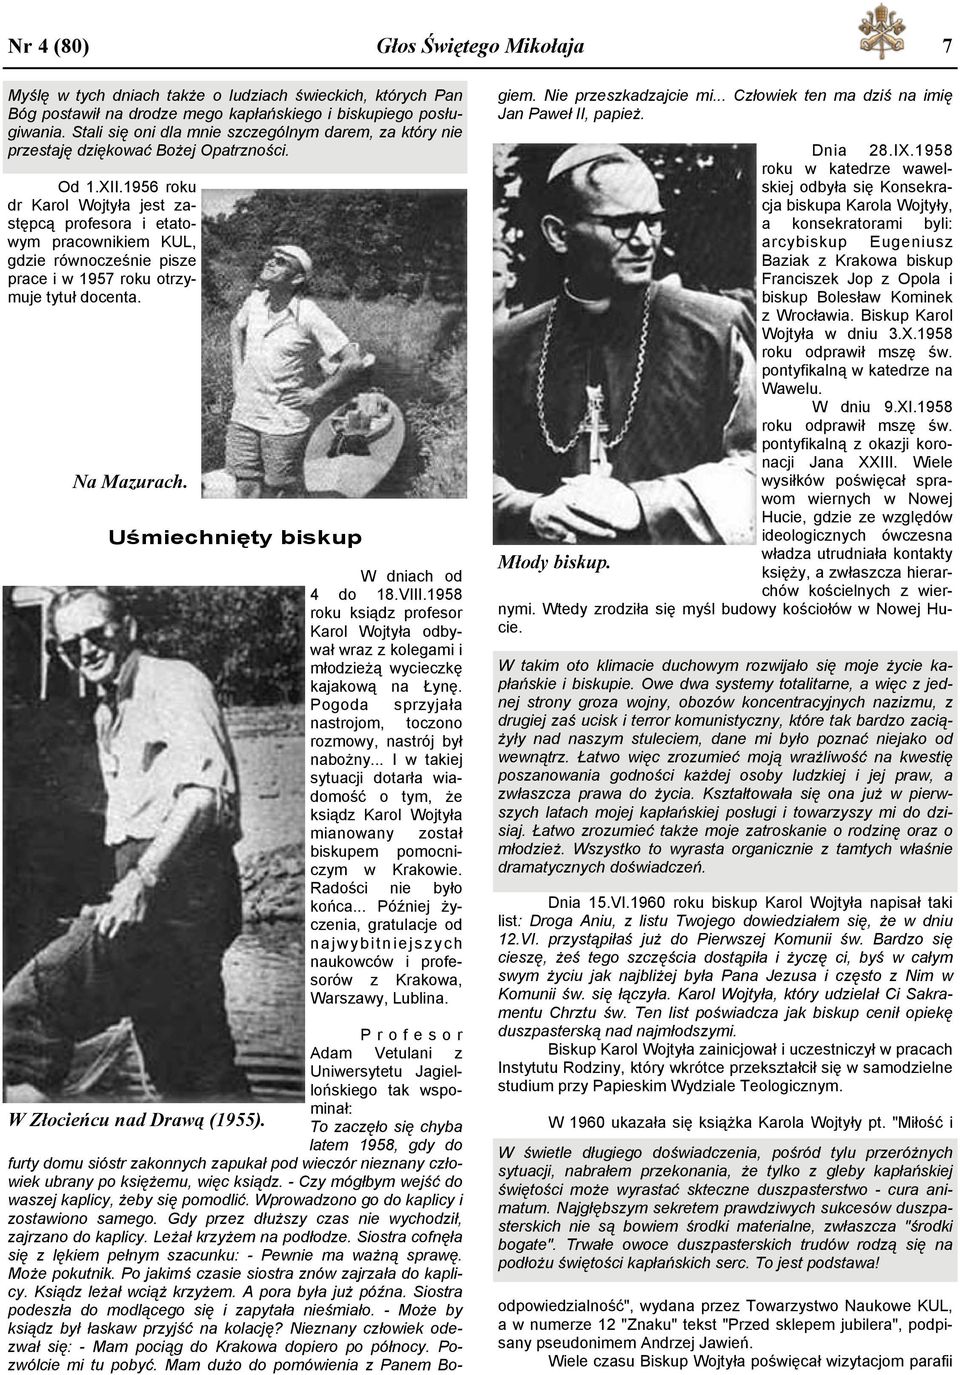 1956 roku dr Karol Wojtyła jest zastępcą profesora i etatowym pracownikiem KUL, gdzie równocześnie pisze prace i w 1957 roku otrzymuje tytuł docenta. Na Mazurach.